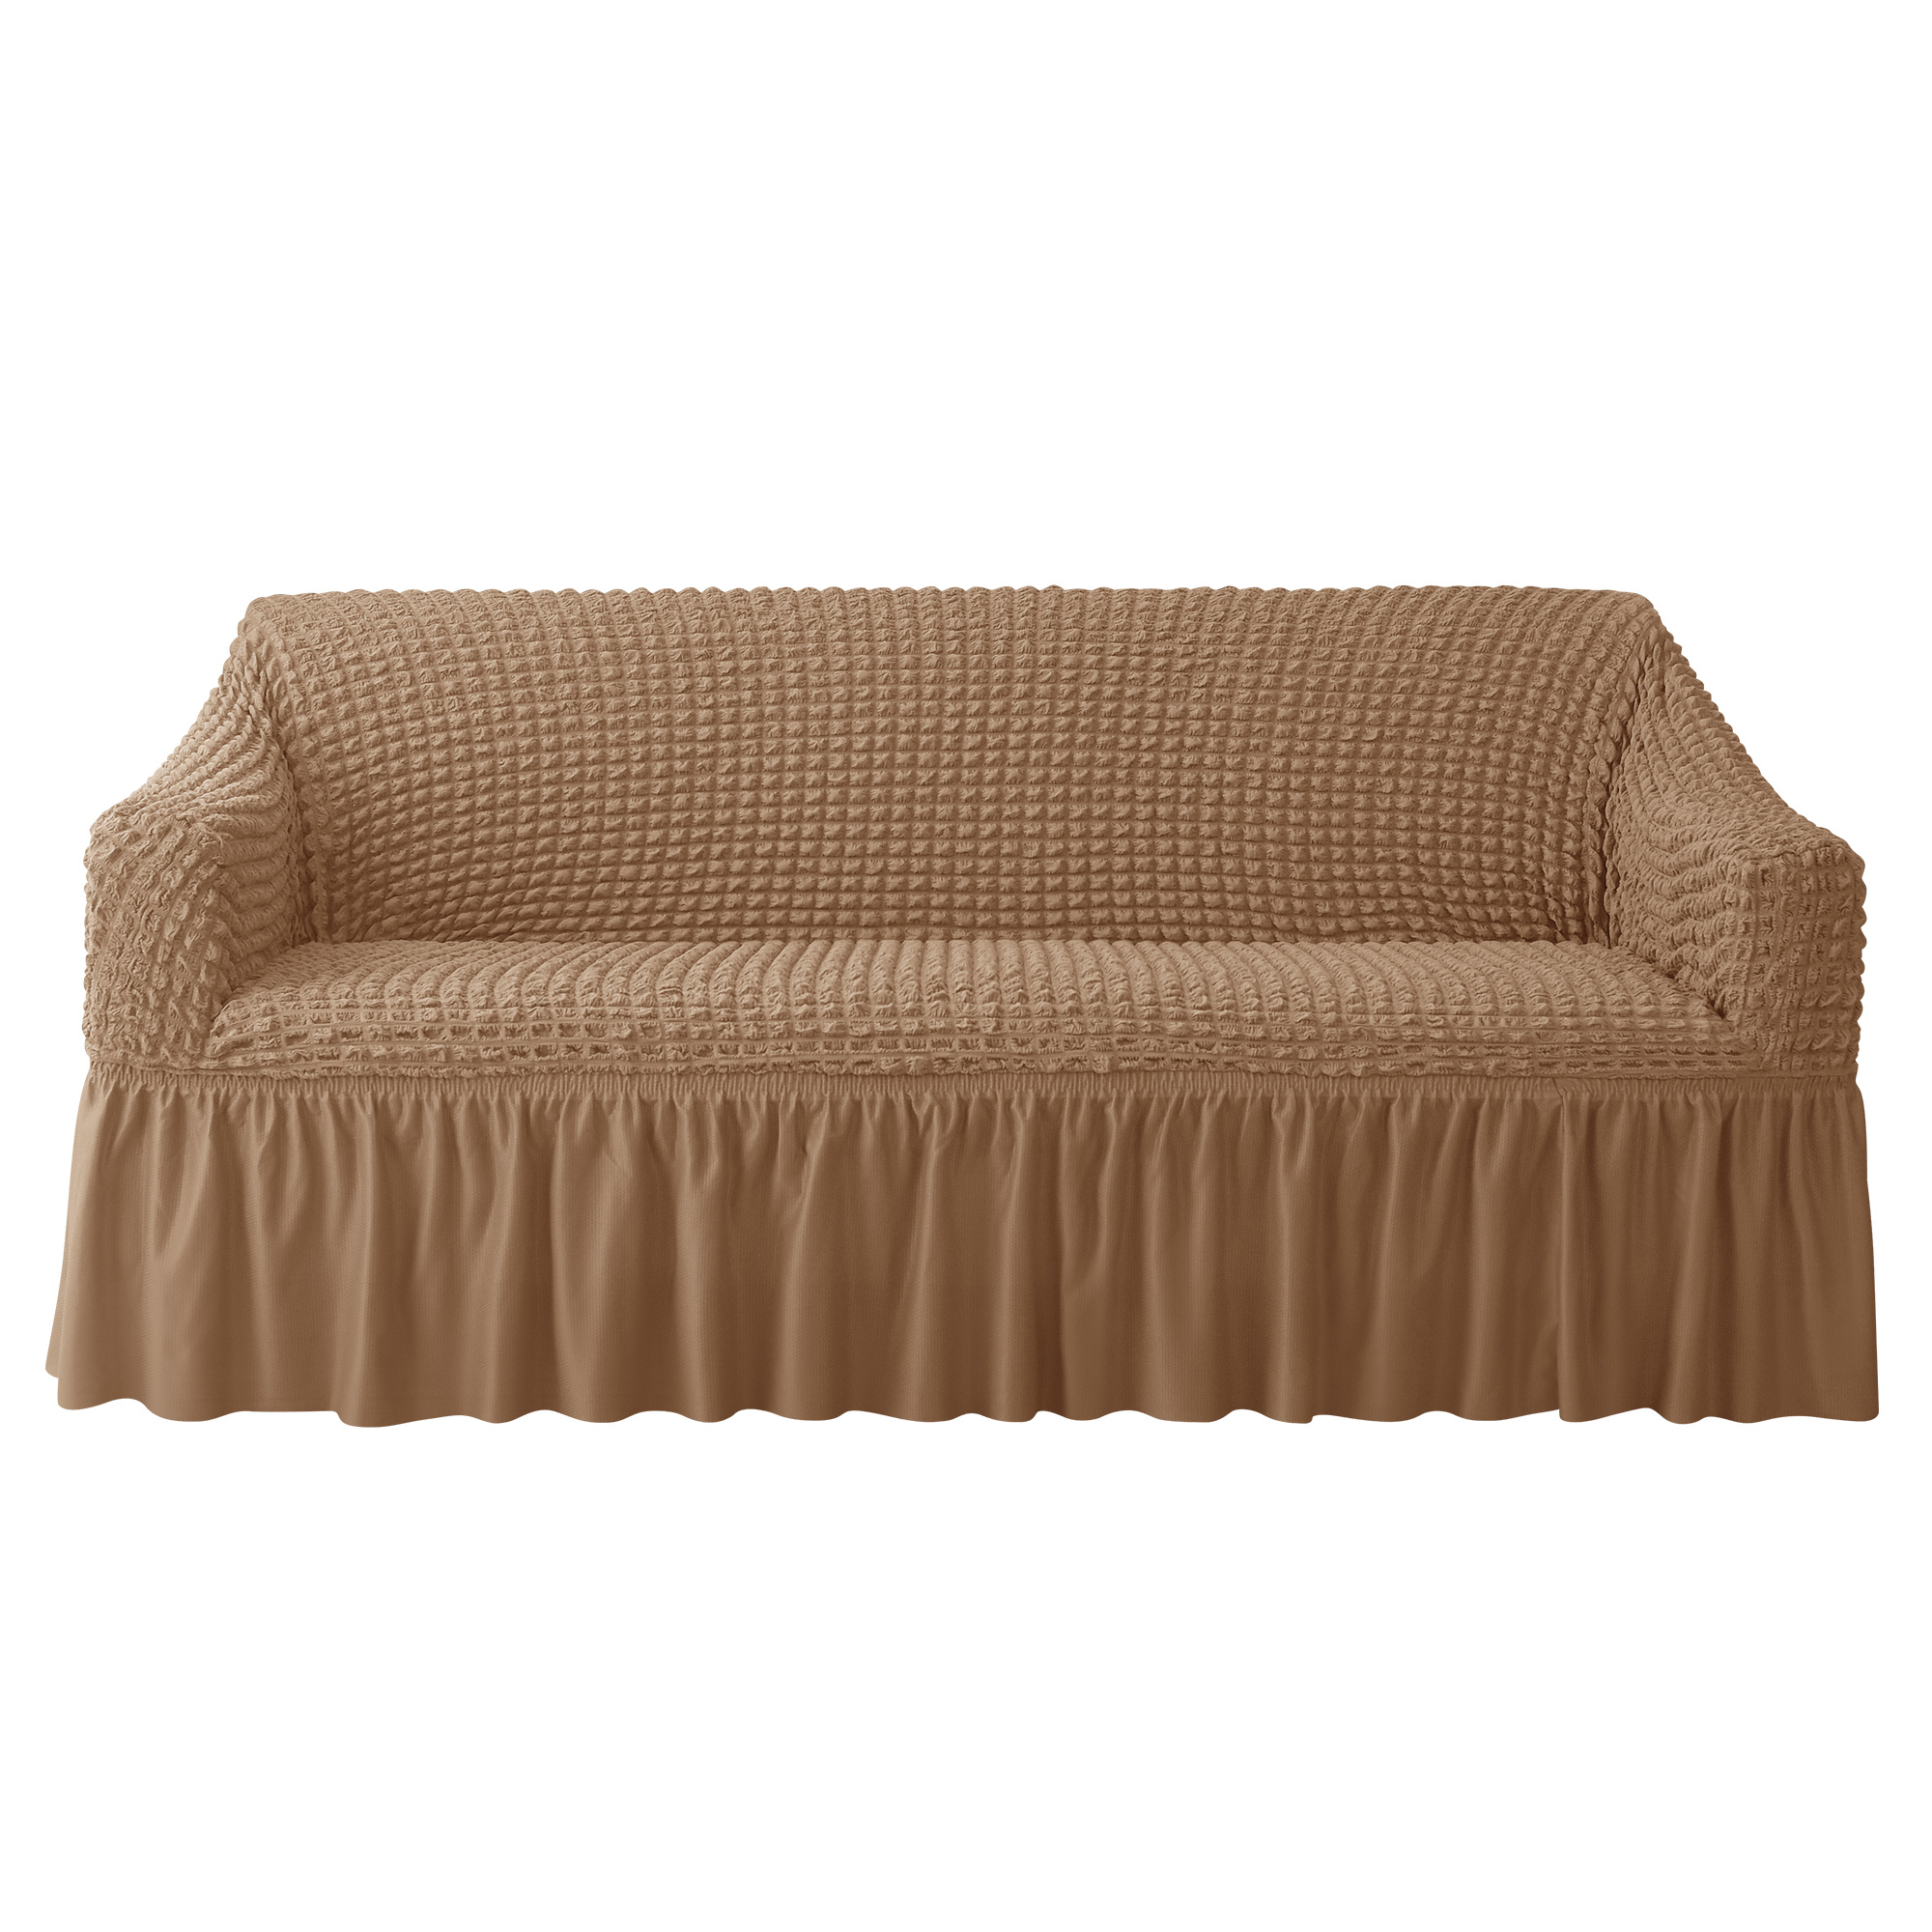 Funda de sofá ajustable de 1 pieza, muy elástica, protector de muebles  antideslizante, para sofás de jacquard, licra